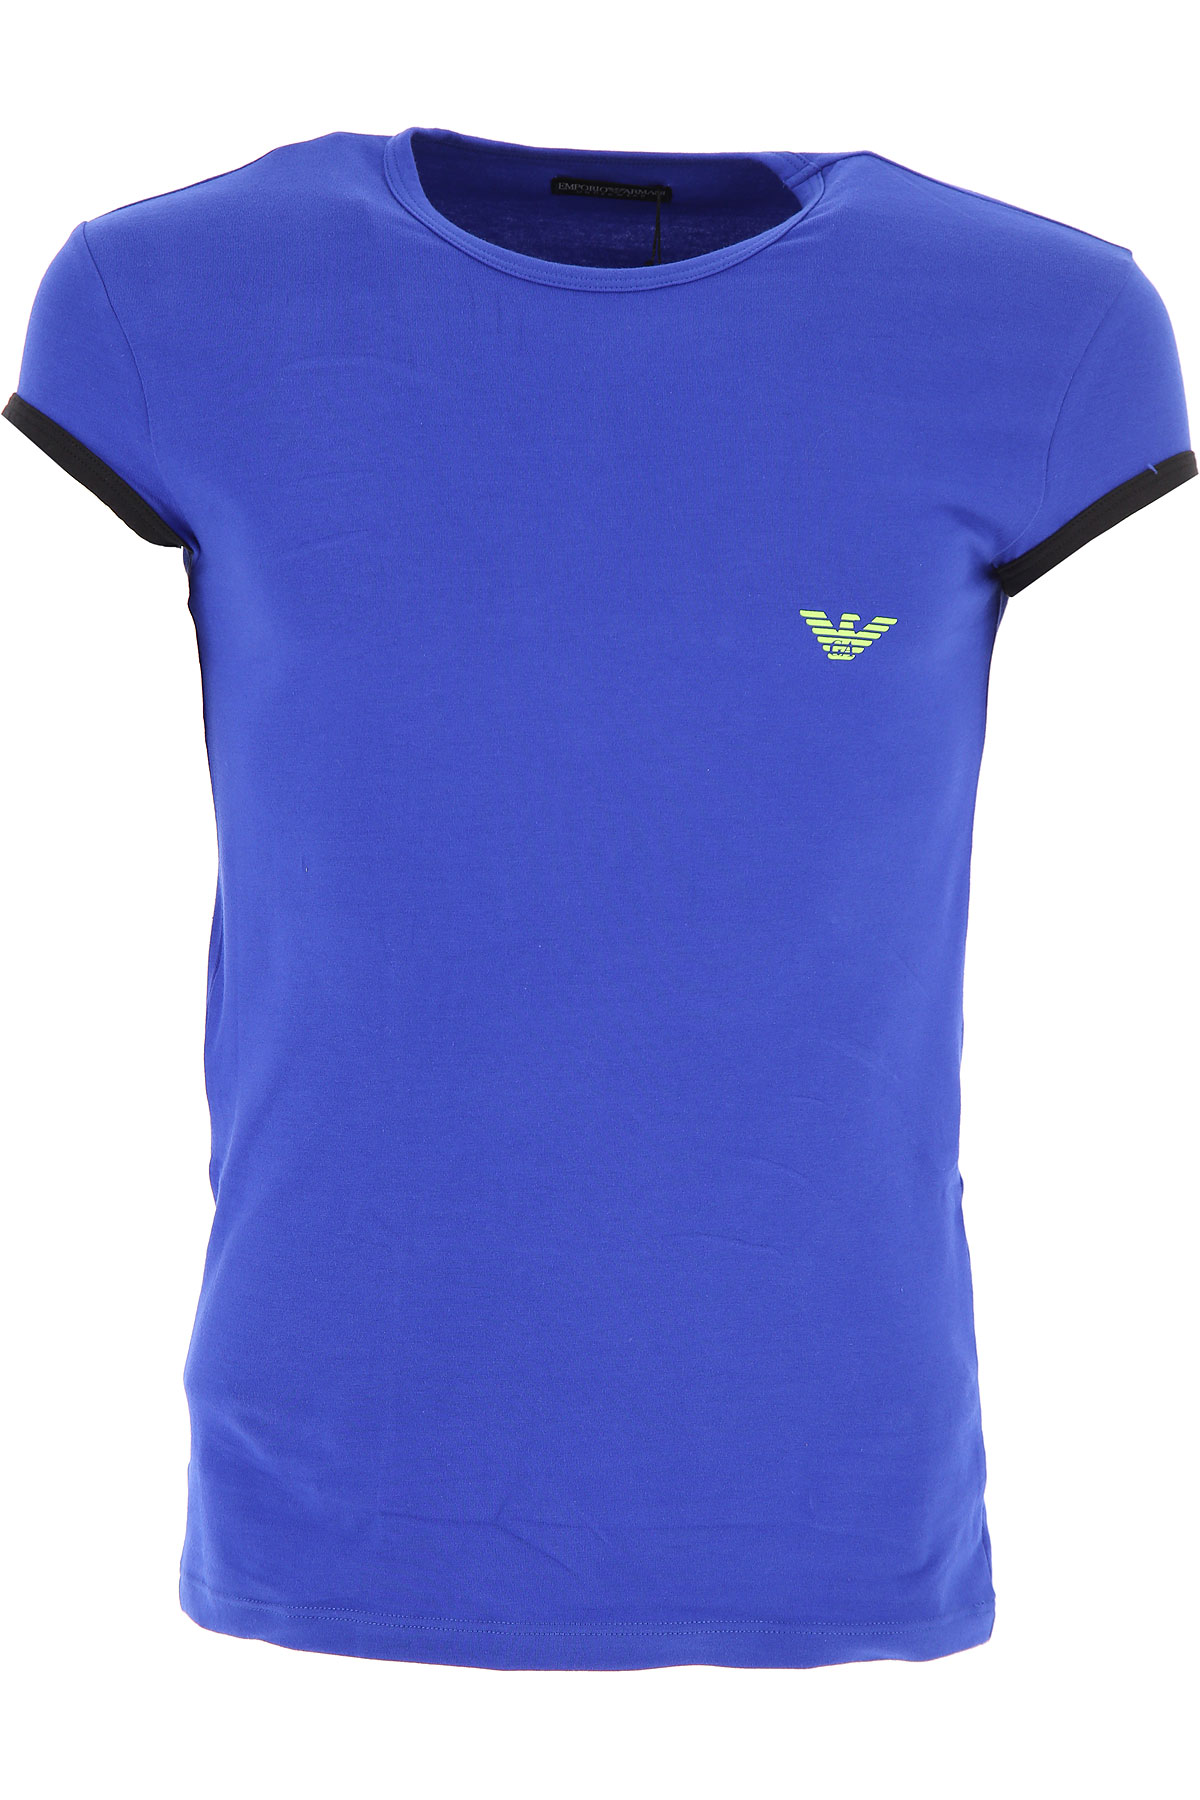 Emporio Armani T-shirt Homme , Bleu électrique, Coton, 2017, L M XL